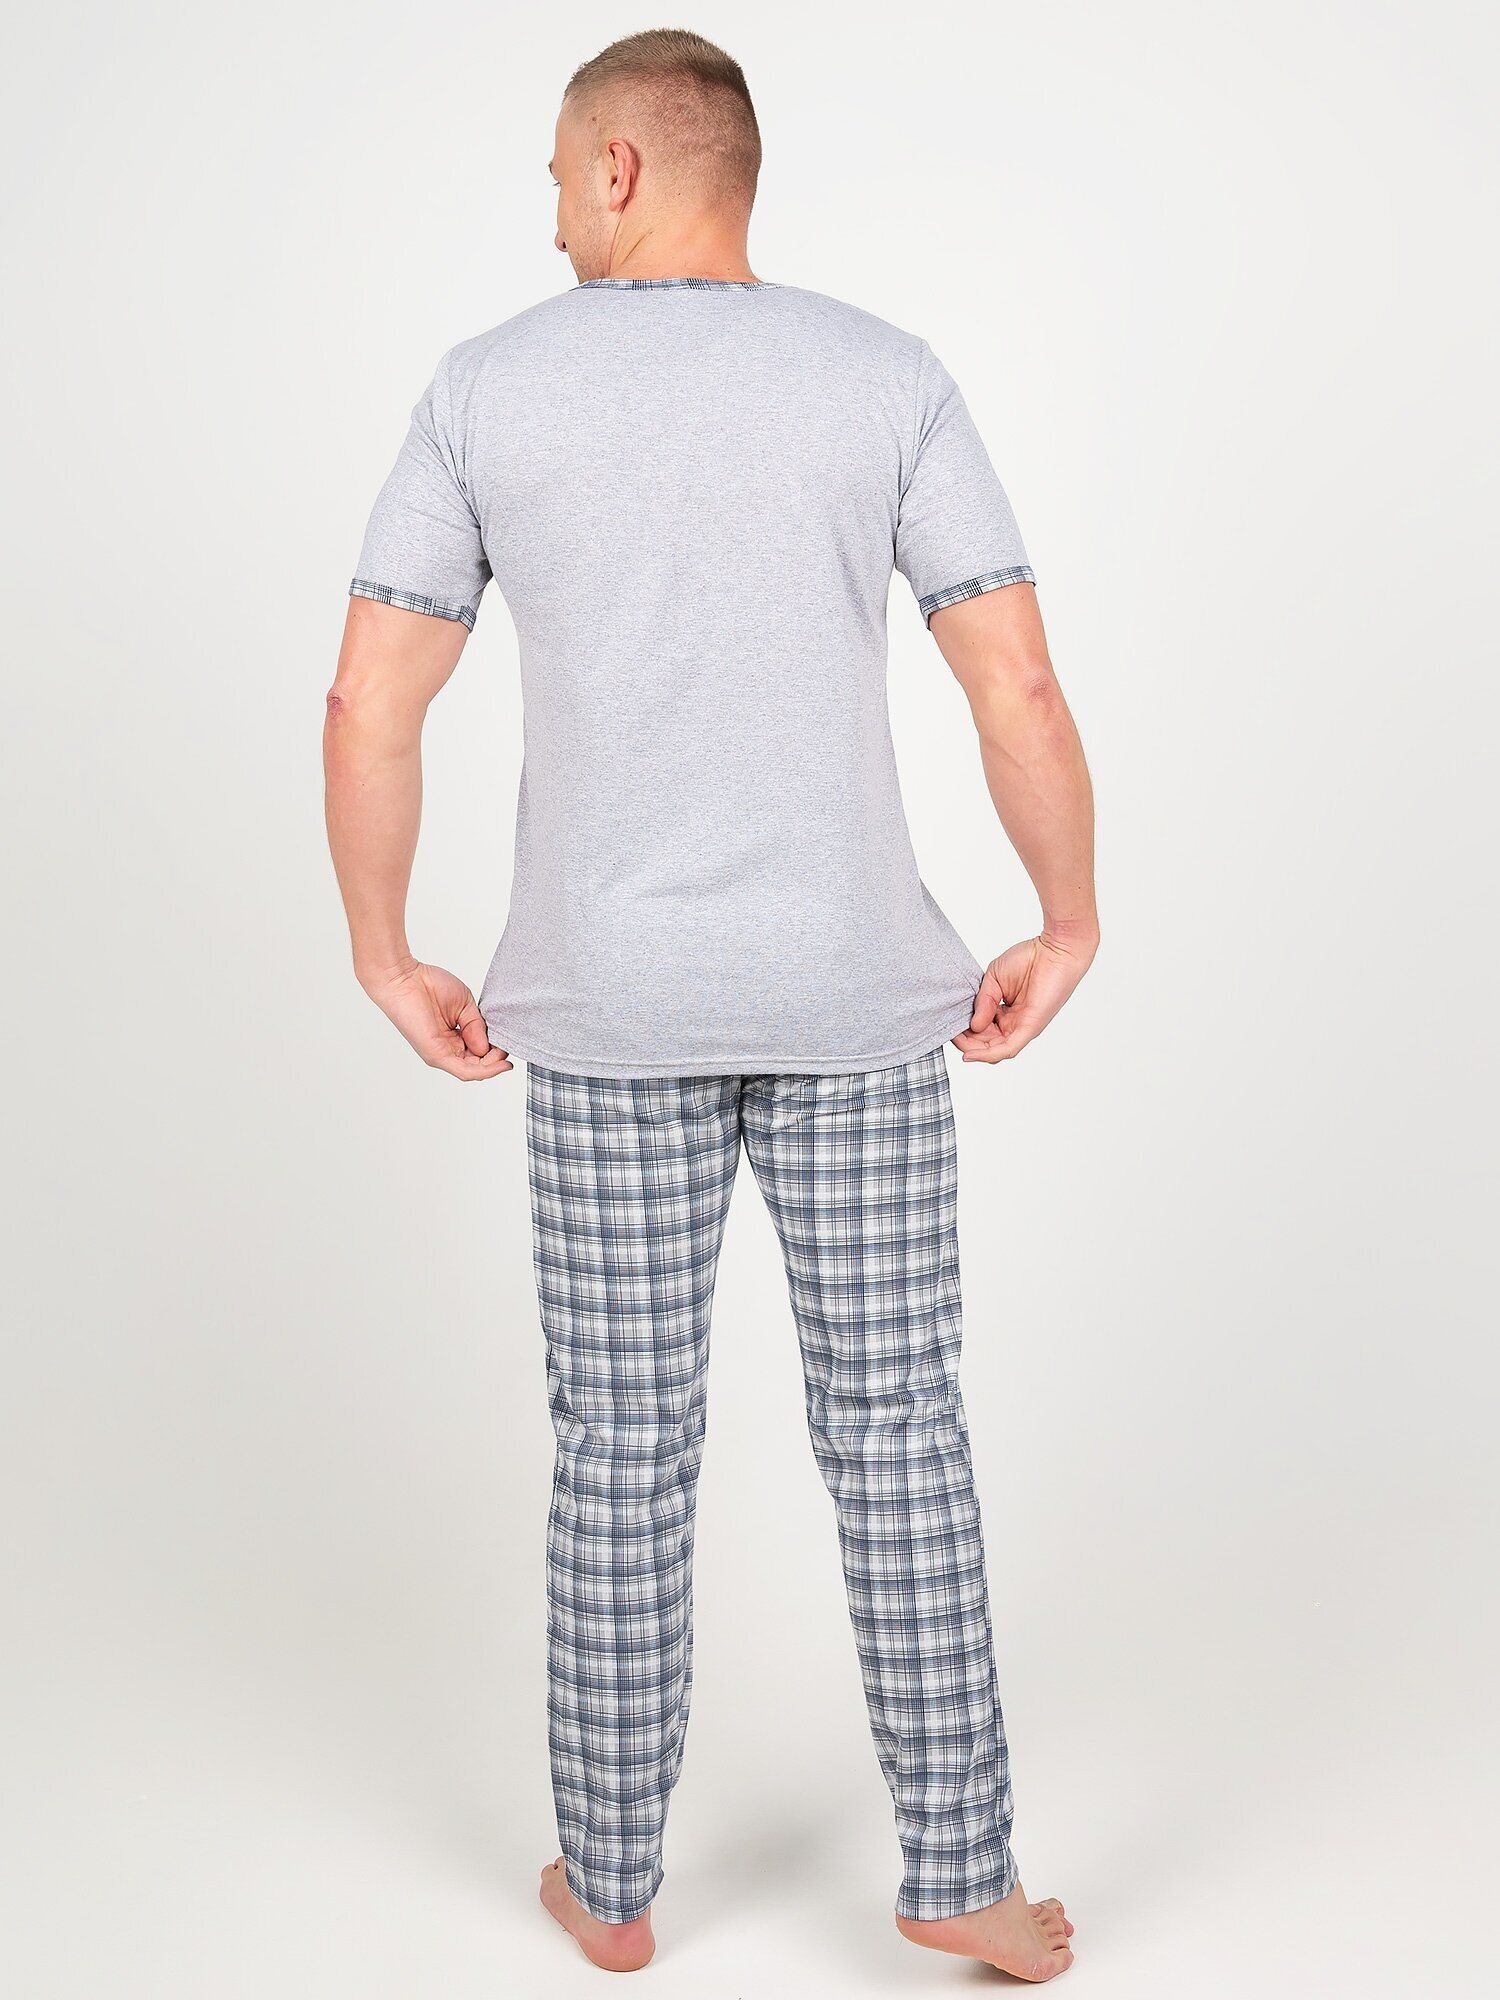 Пижама мужская, Ивелена, серая, 52 размер - фотография № 9